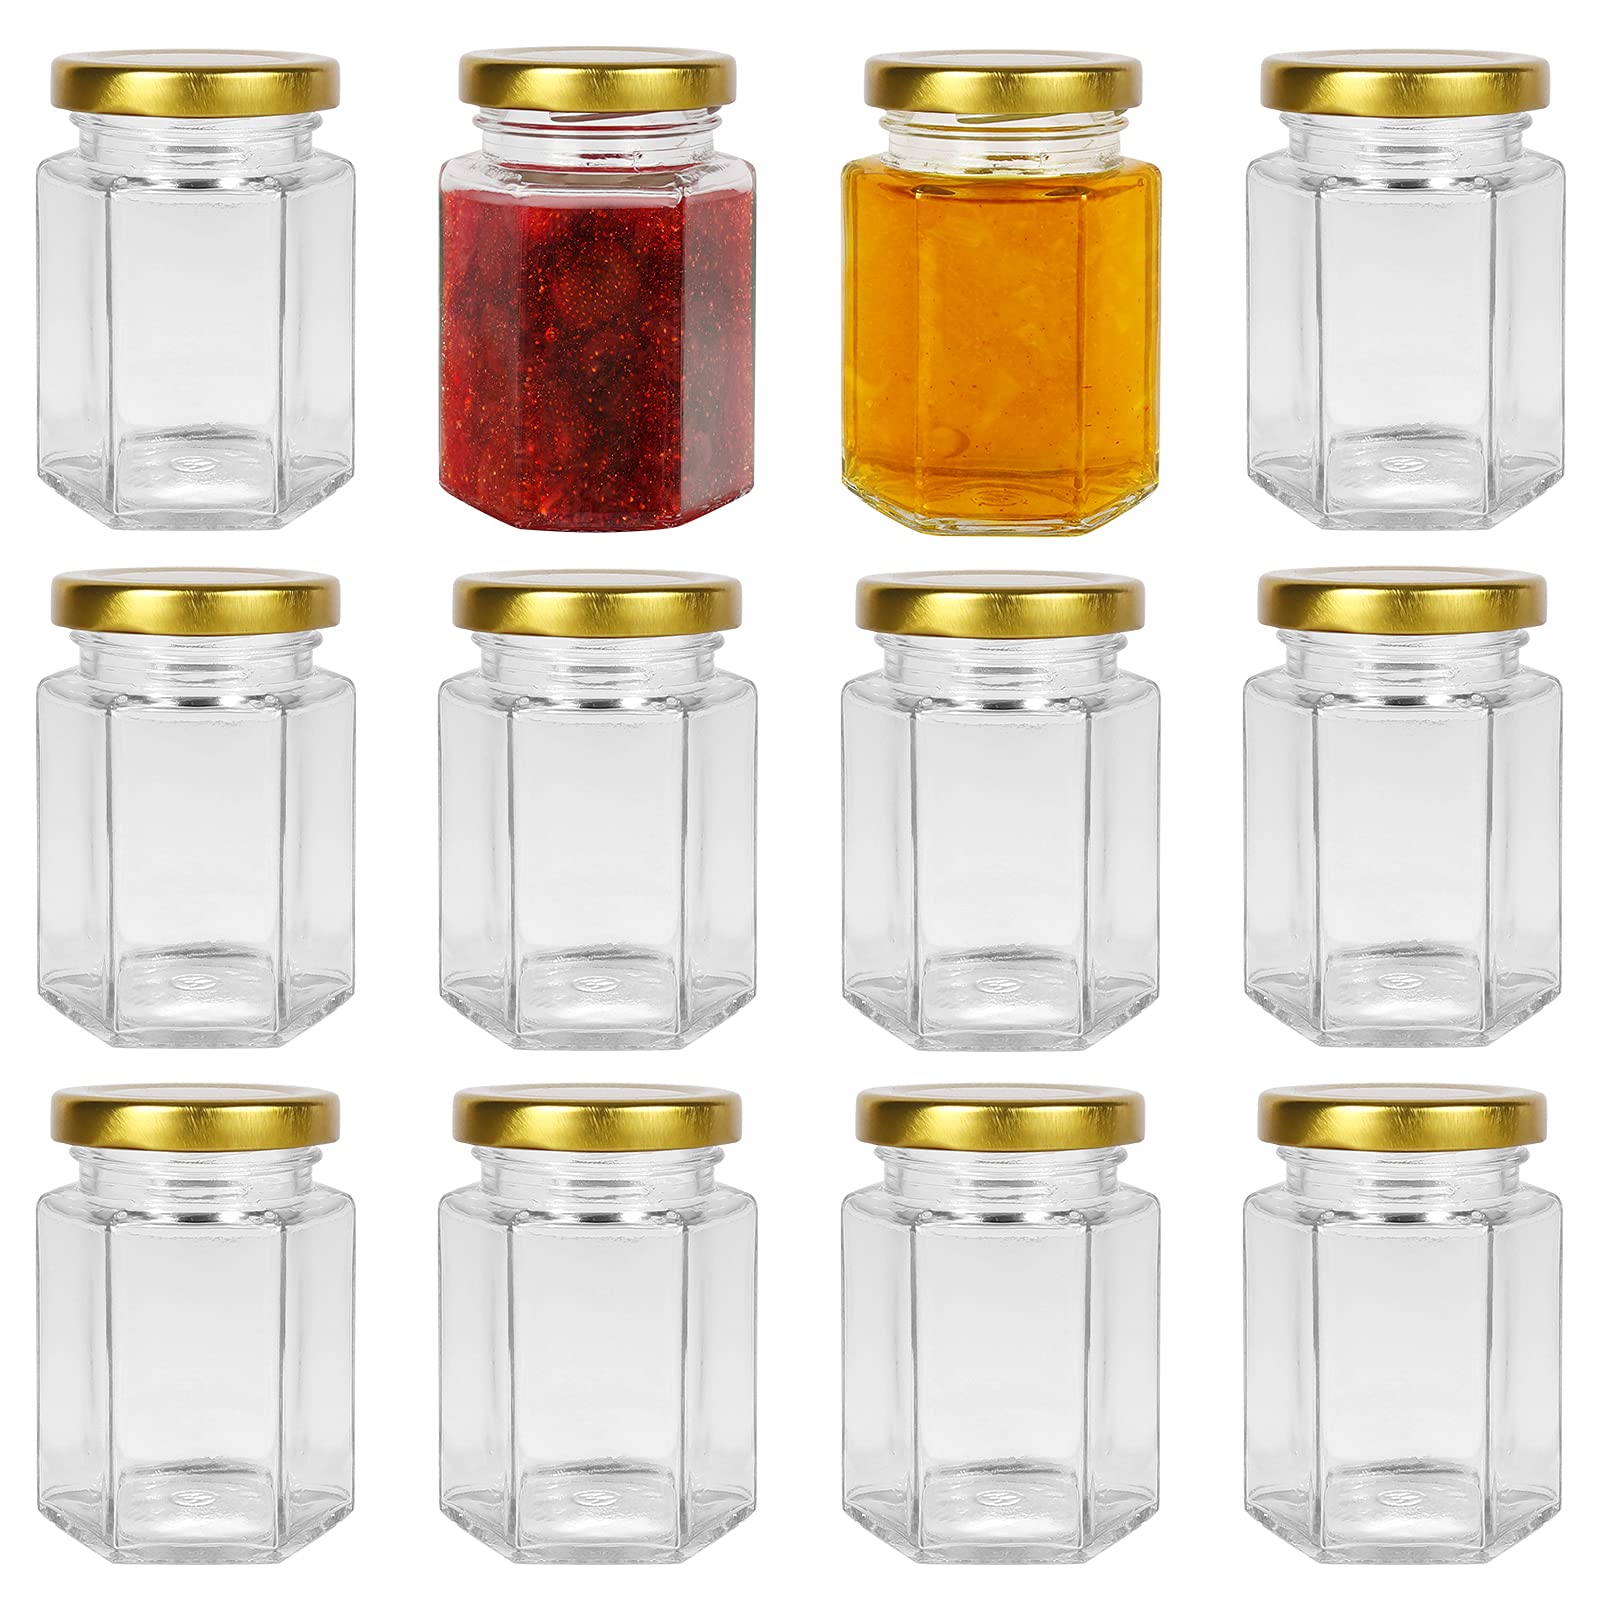 Yishik 12 Stück sechseckige Gläser mit goldfarbenem Deckel, Einmachgläser für Marmelade, Gewürze, Süßigkeiten, Babynahrung, Hochzeitsgeschenke oder Gläser